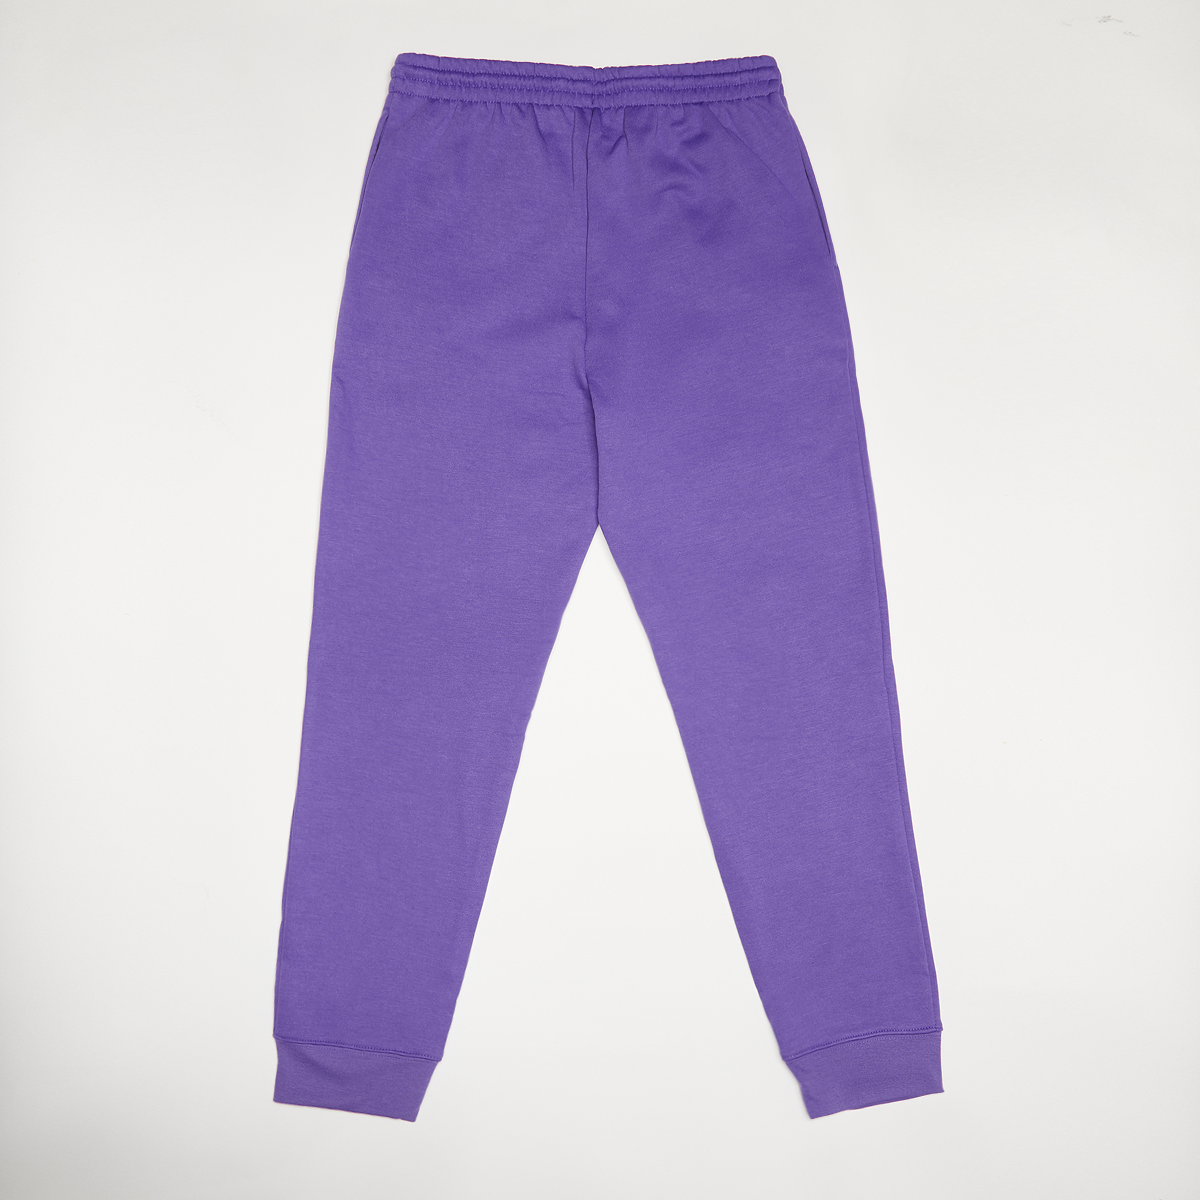 Jordan Jumpman Sustainable Pant Trainingsbroeken Kids purple venom maat: 128 beschikbare maaten:128 147 170